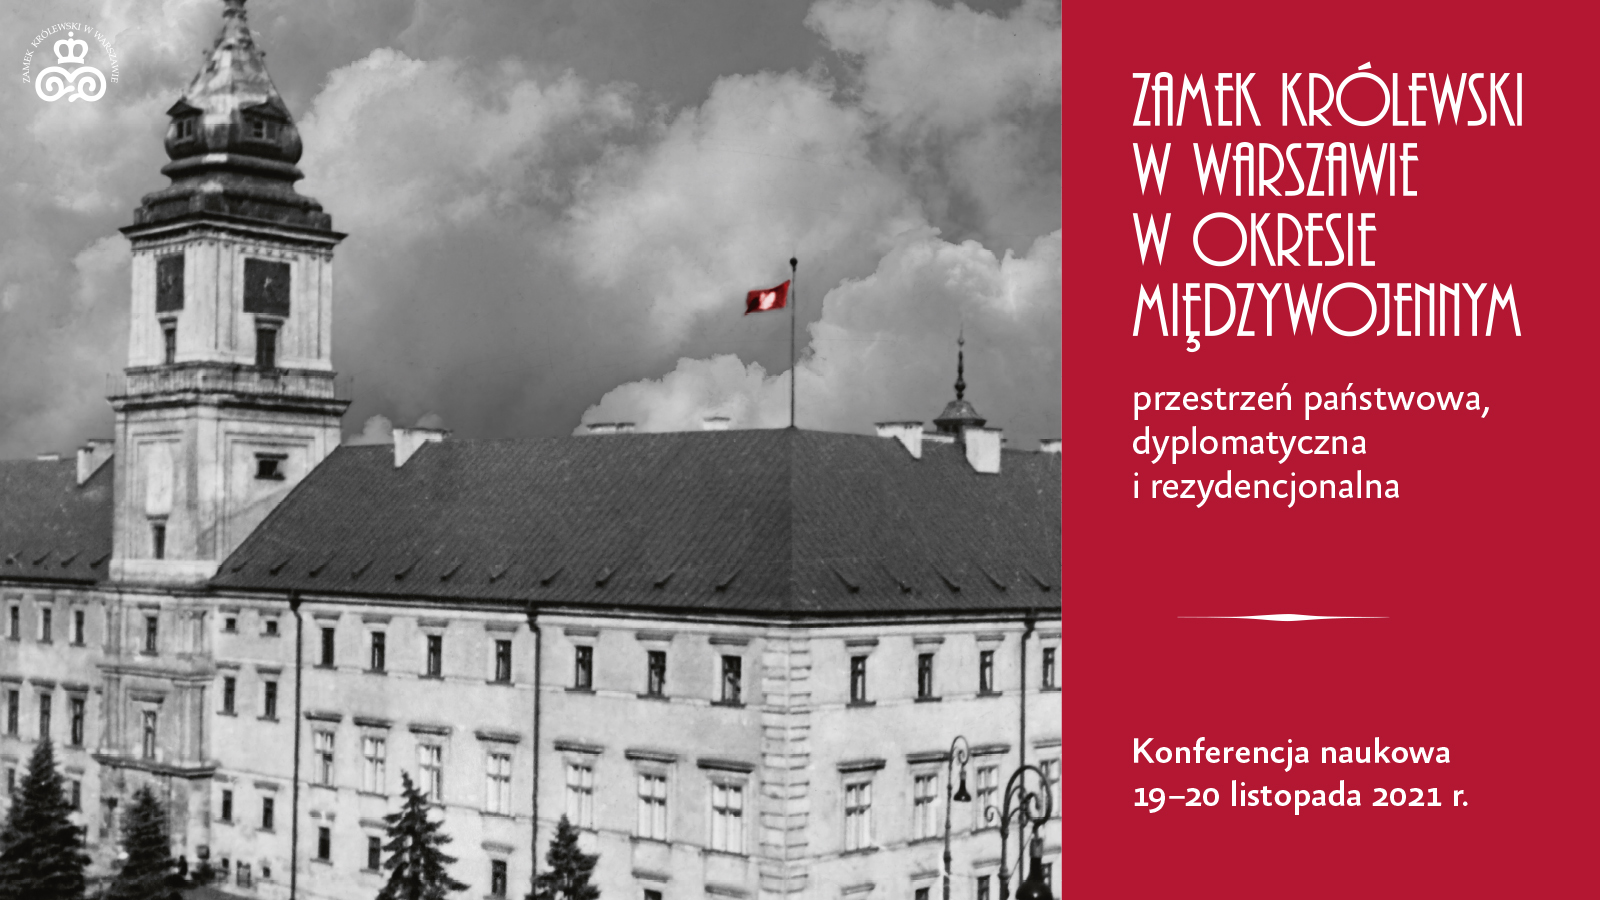 Konferencja naukowa "Zamek Królewski w Warszawie w okresie międzywojennym – przestrzeń państwowa, dyplomatyczna i rezydencjonalna"